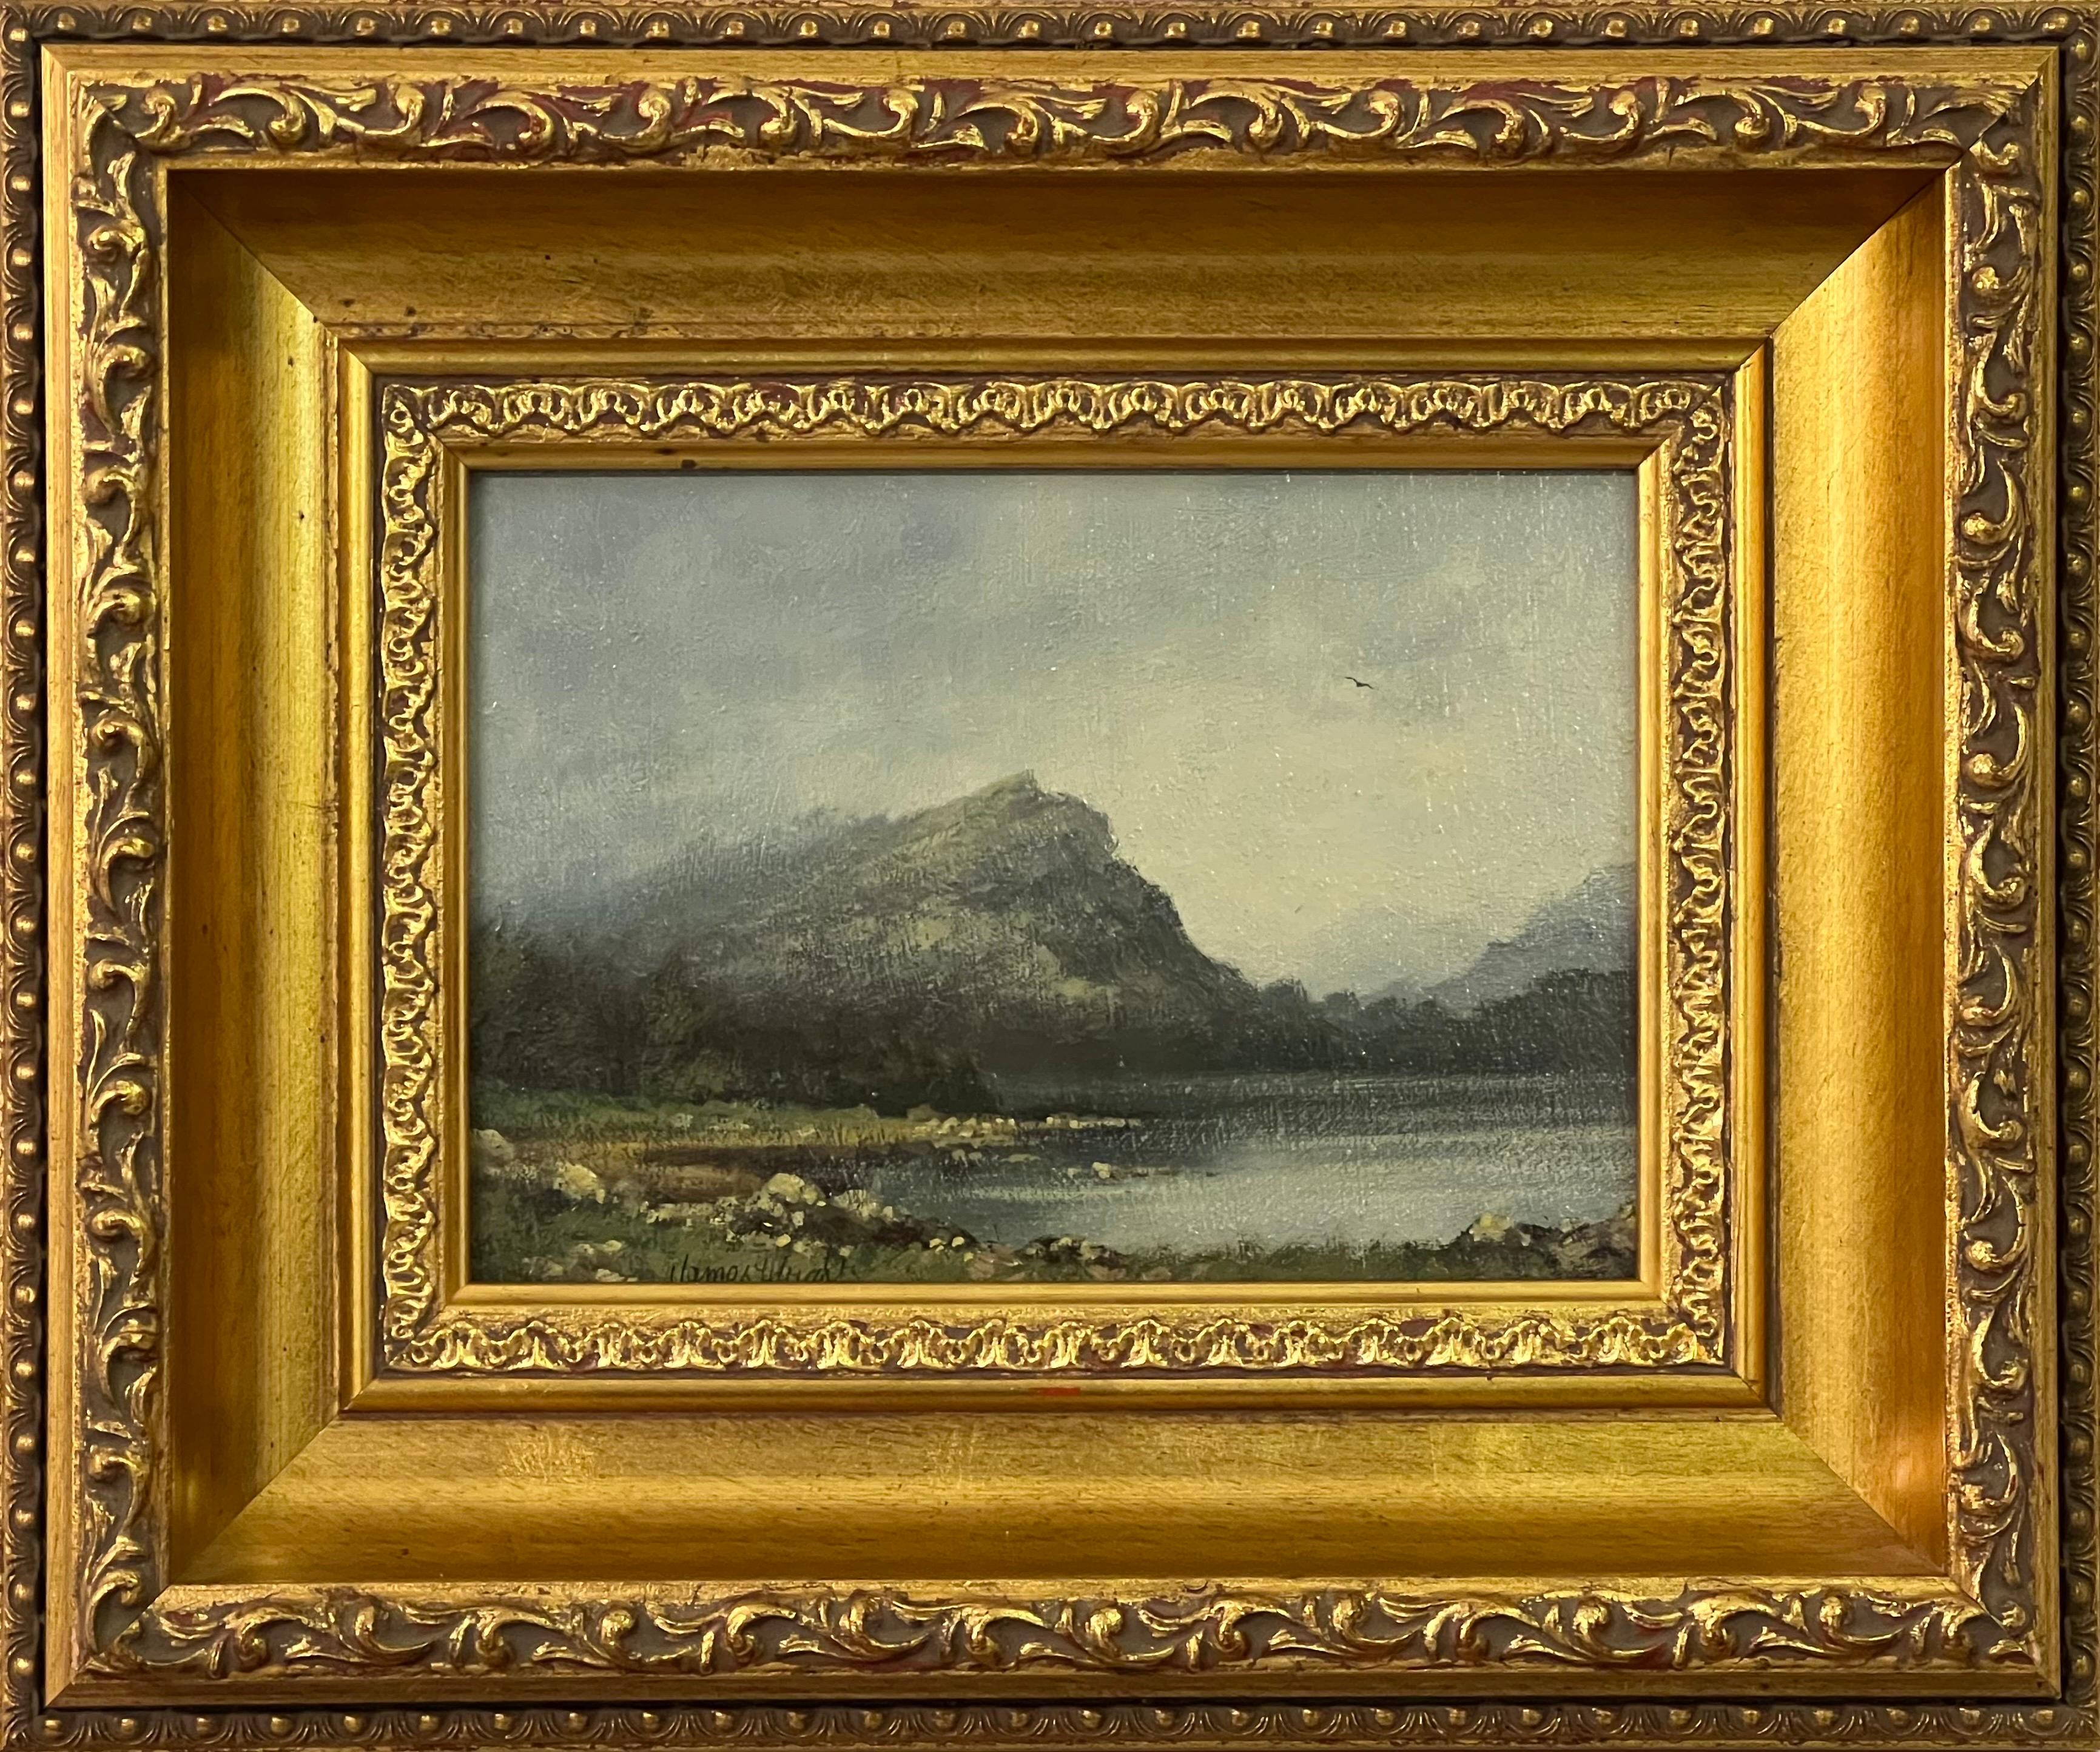 James Wright Animal Painting – Gemälde von See und Bergen in England des britischen Landschaftsmalers des 20. Jahrhunderts